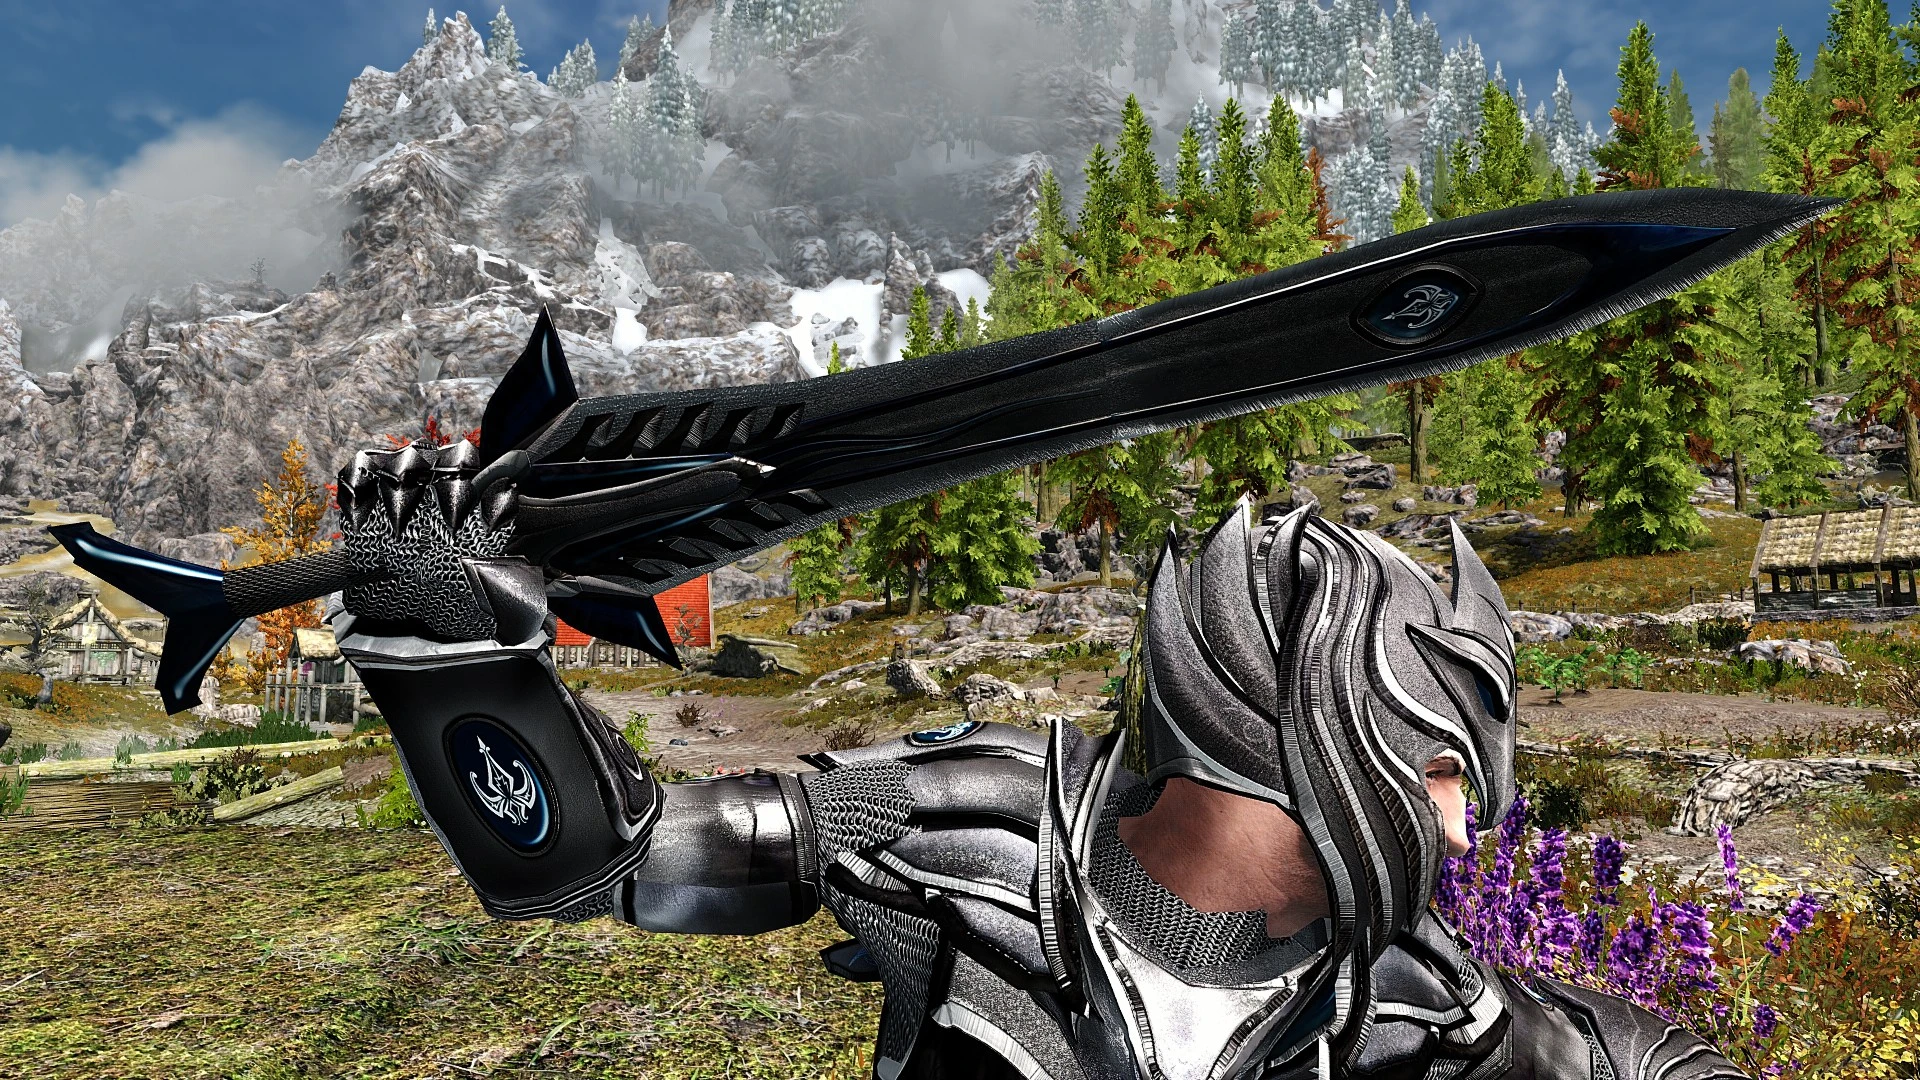 Skyrim colorful. Skyrim Special Edition Elven Armor. Skyrim colorful Magic мод. Мод на скайрим спешл эдишн на ИМБОВЫЙ лук. Skyrim colorful Magic Weapons.